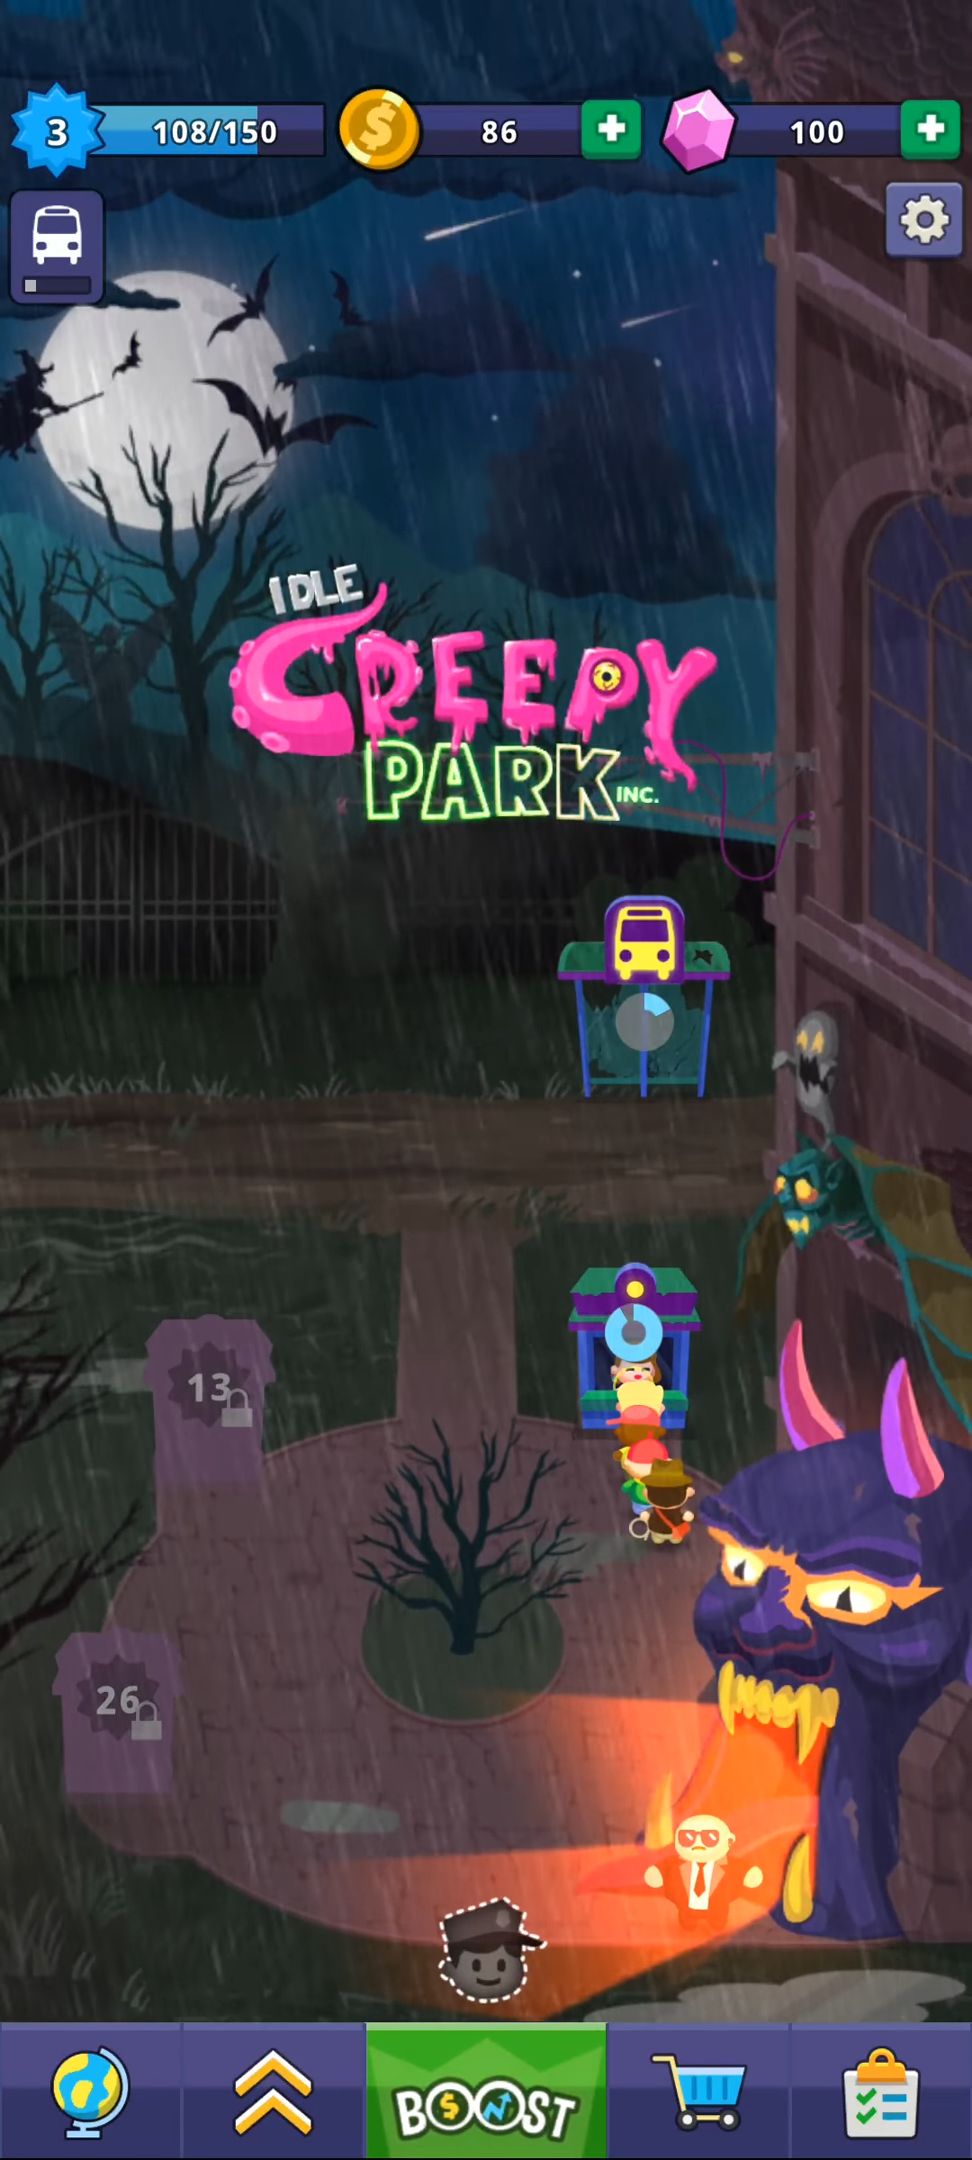 Télécharger Idle Creepy Park Inc. pour Android gratuit.